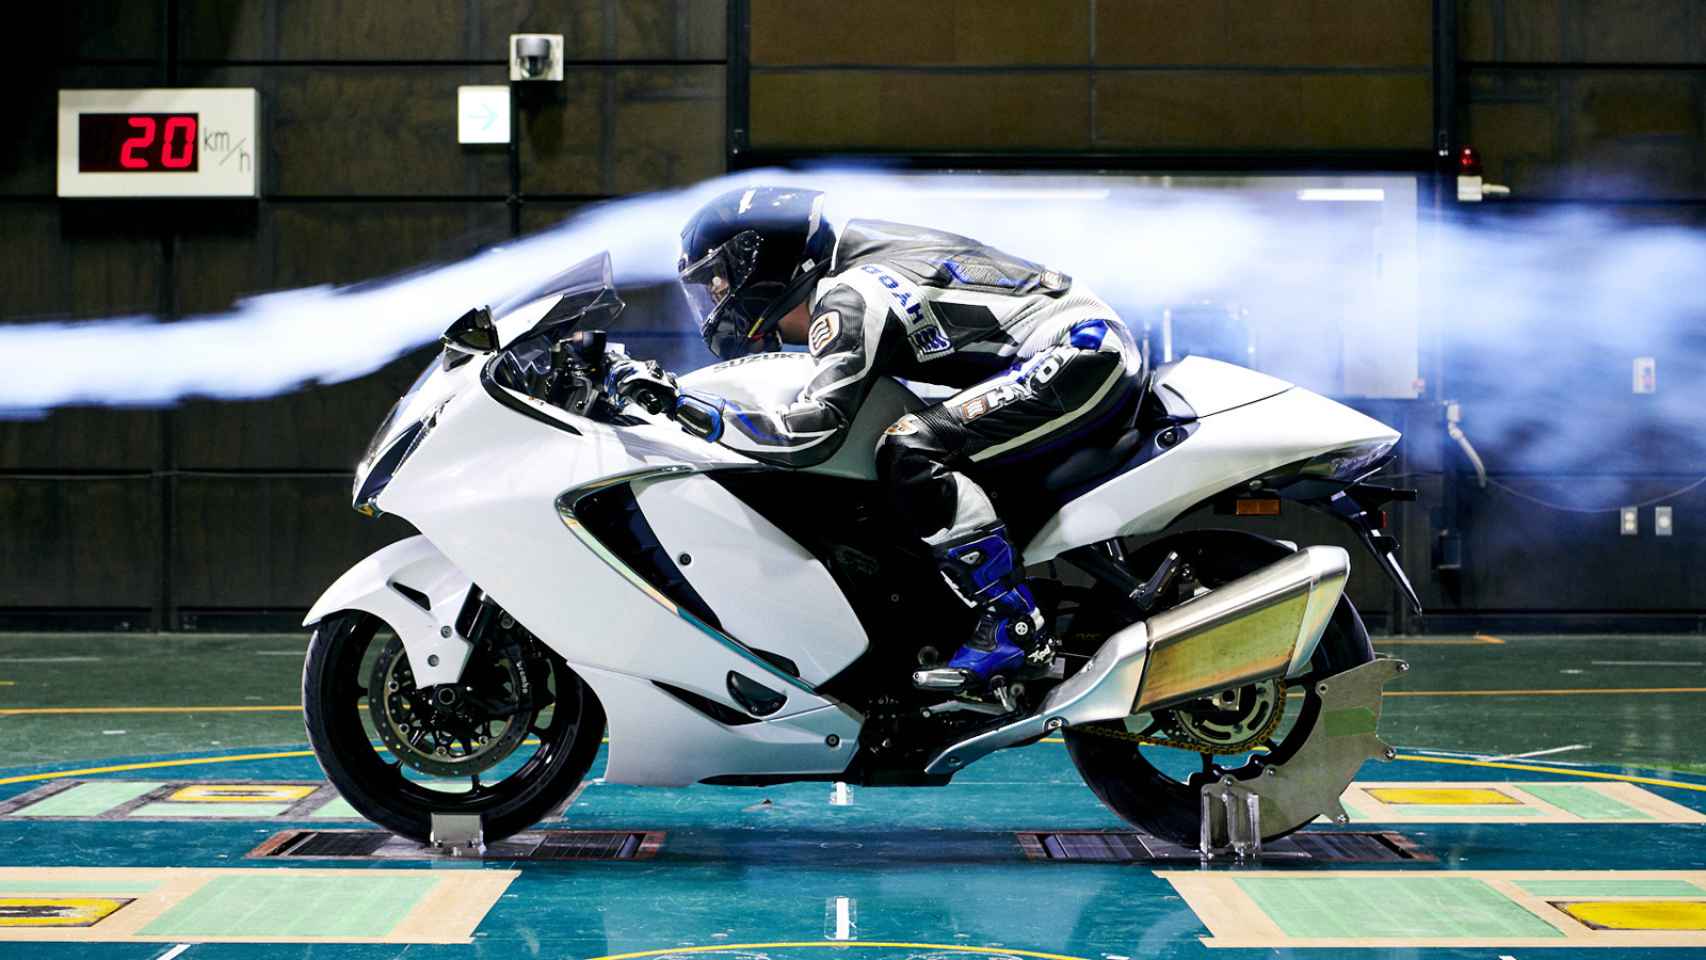 Vuelve la Suzuki Hayabusa, la moto de los 300 km/h de